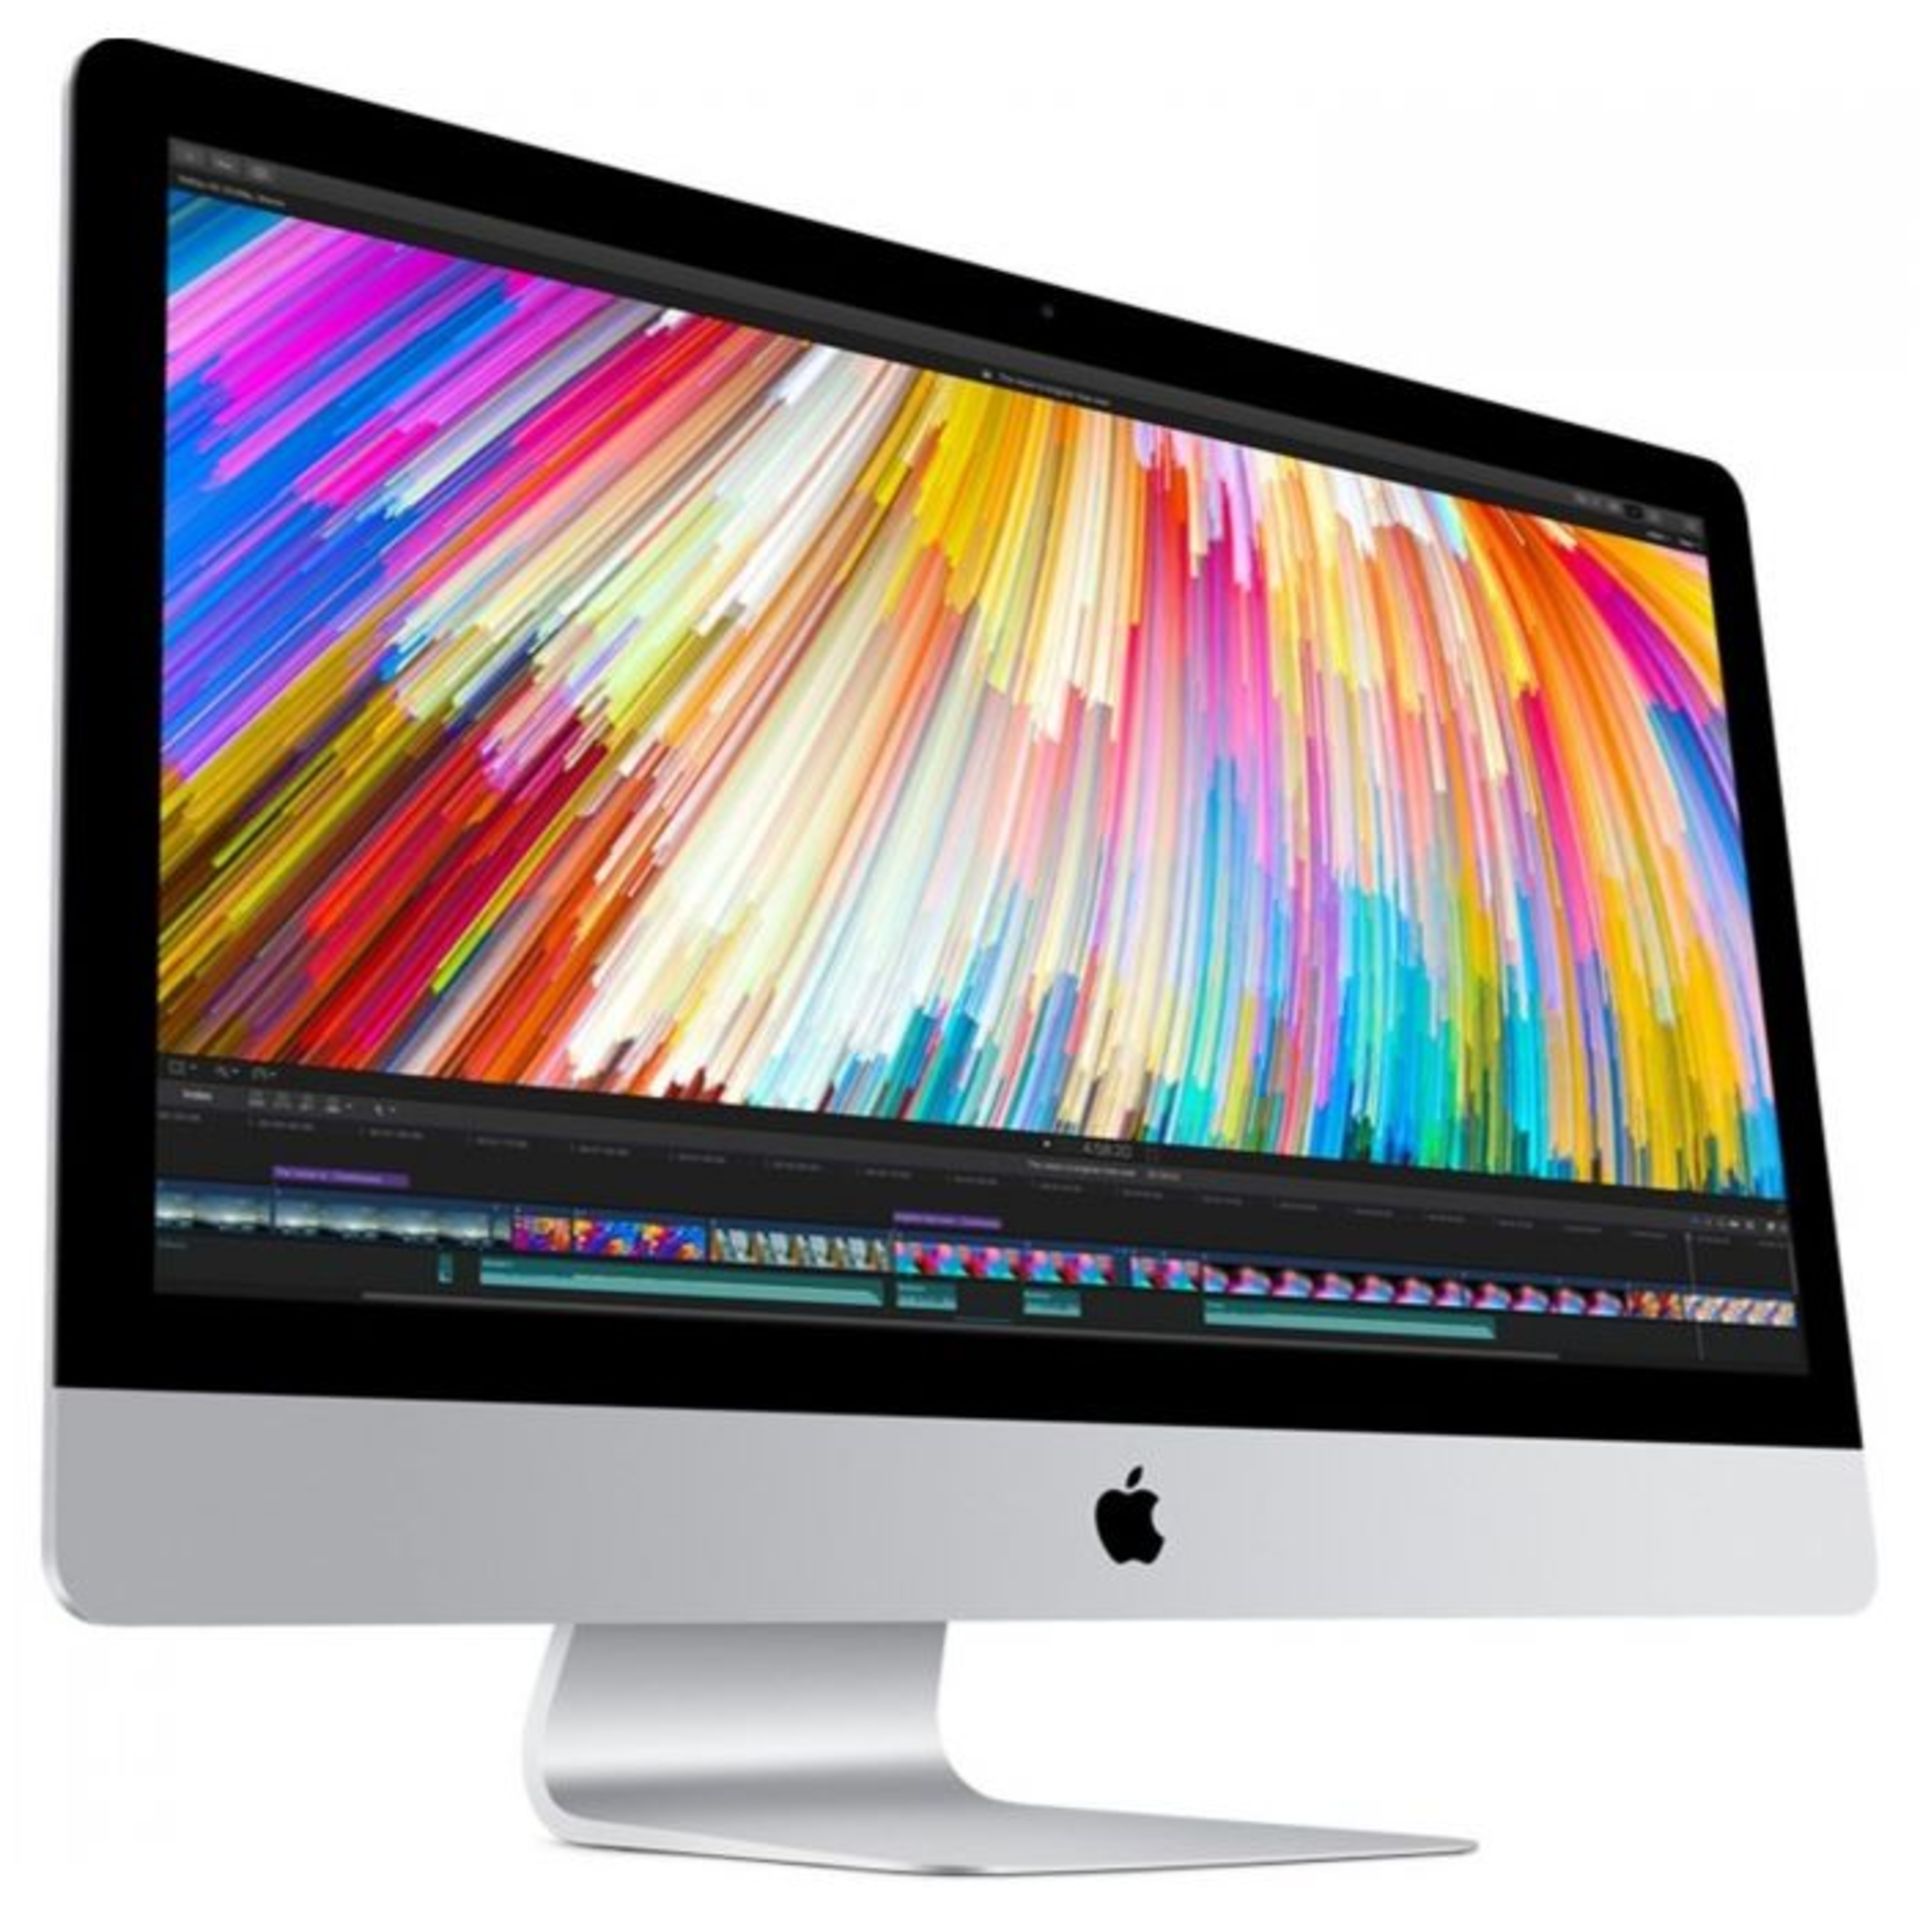 Apple iMac 27” A1419 Slim Catalina Intel Core i7 Quad Core 16GB DDR3 1TB & 128GB SSD Office